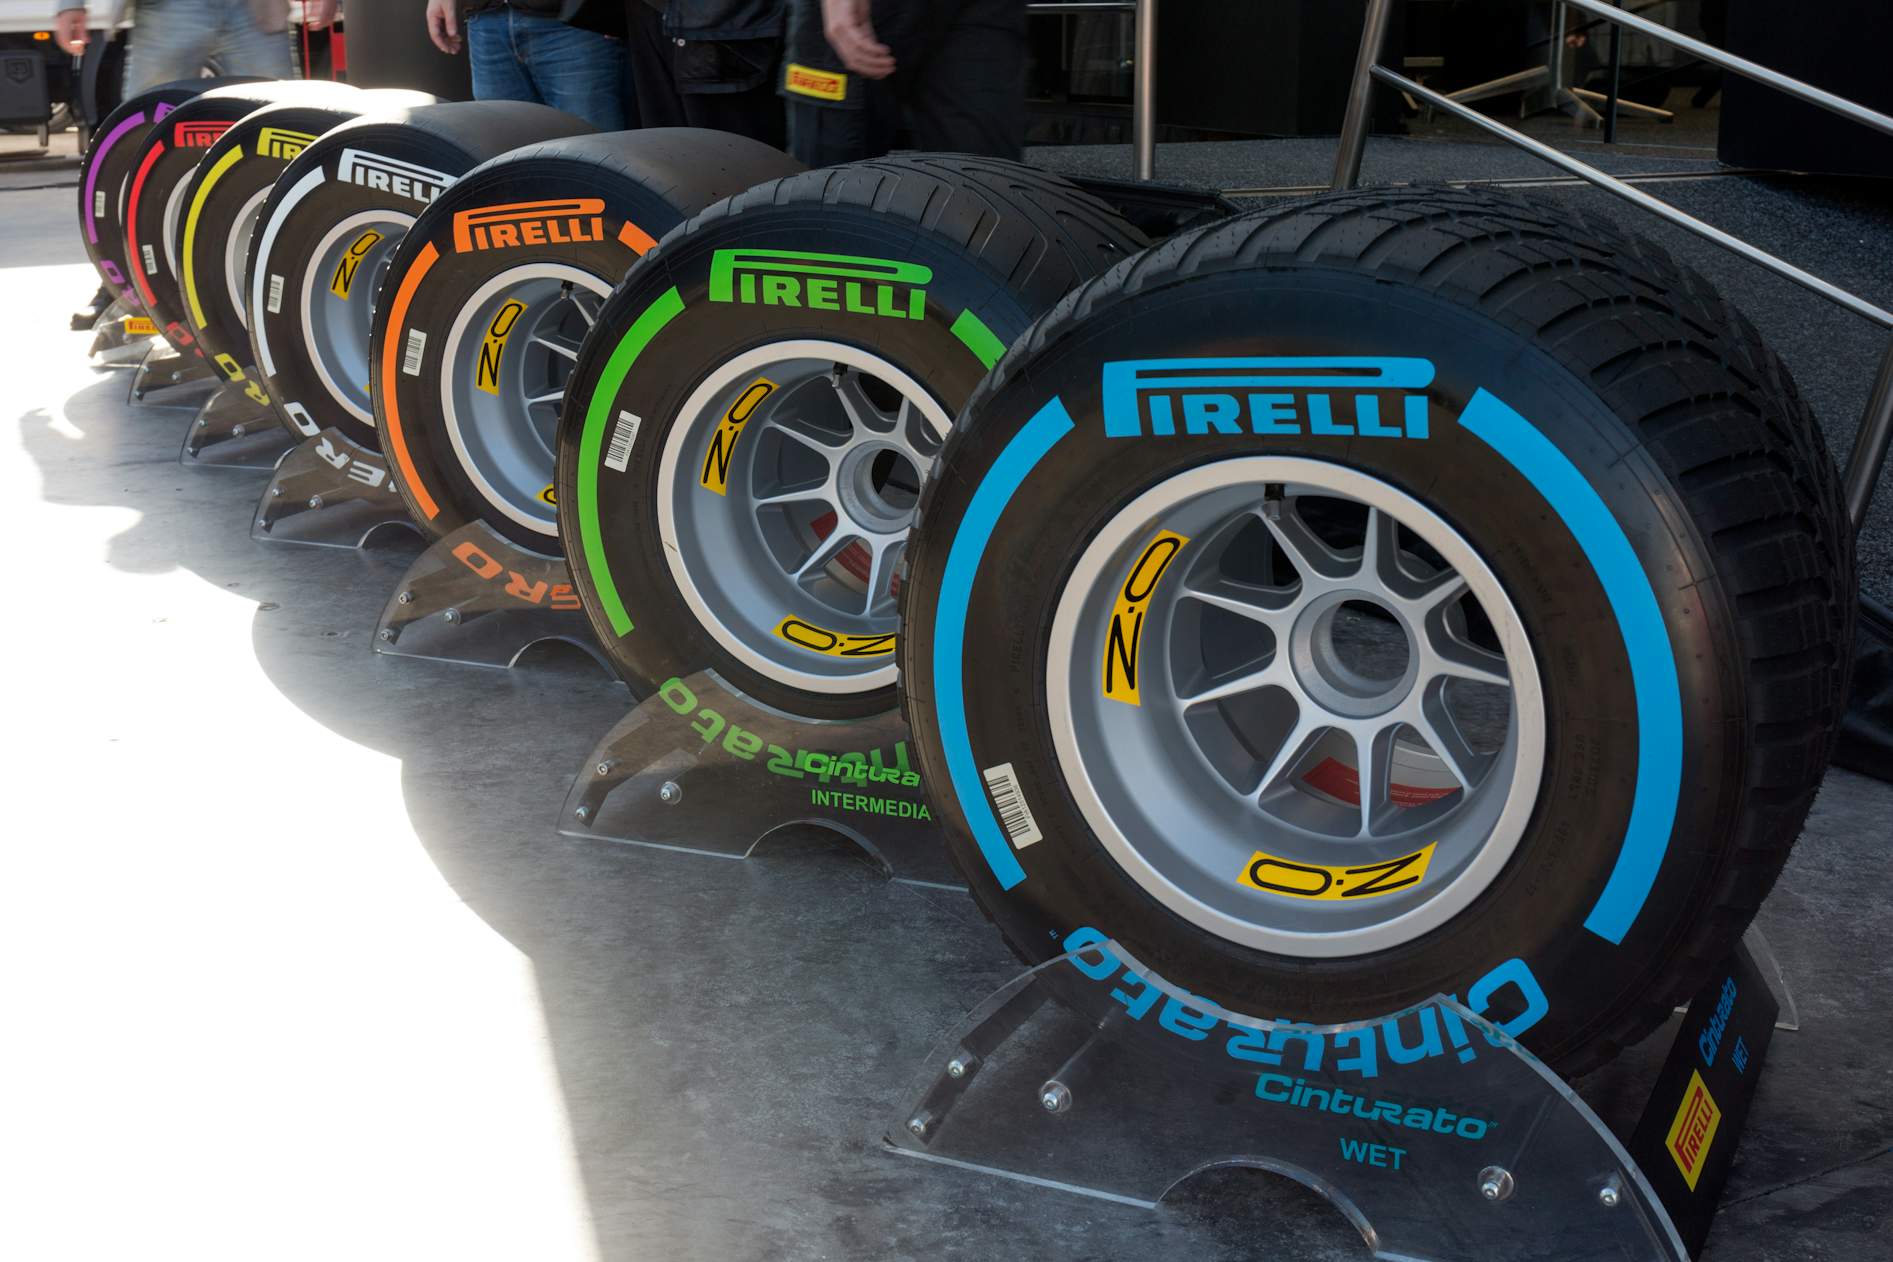 biologi Hold sammen med i dag Pirelli skrotter 1.800 dæk pga. aflysning af løb i F1 | Bilmagasinet.dk